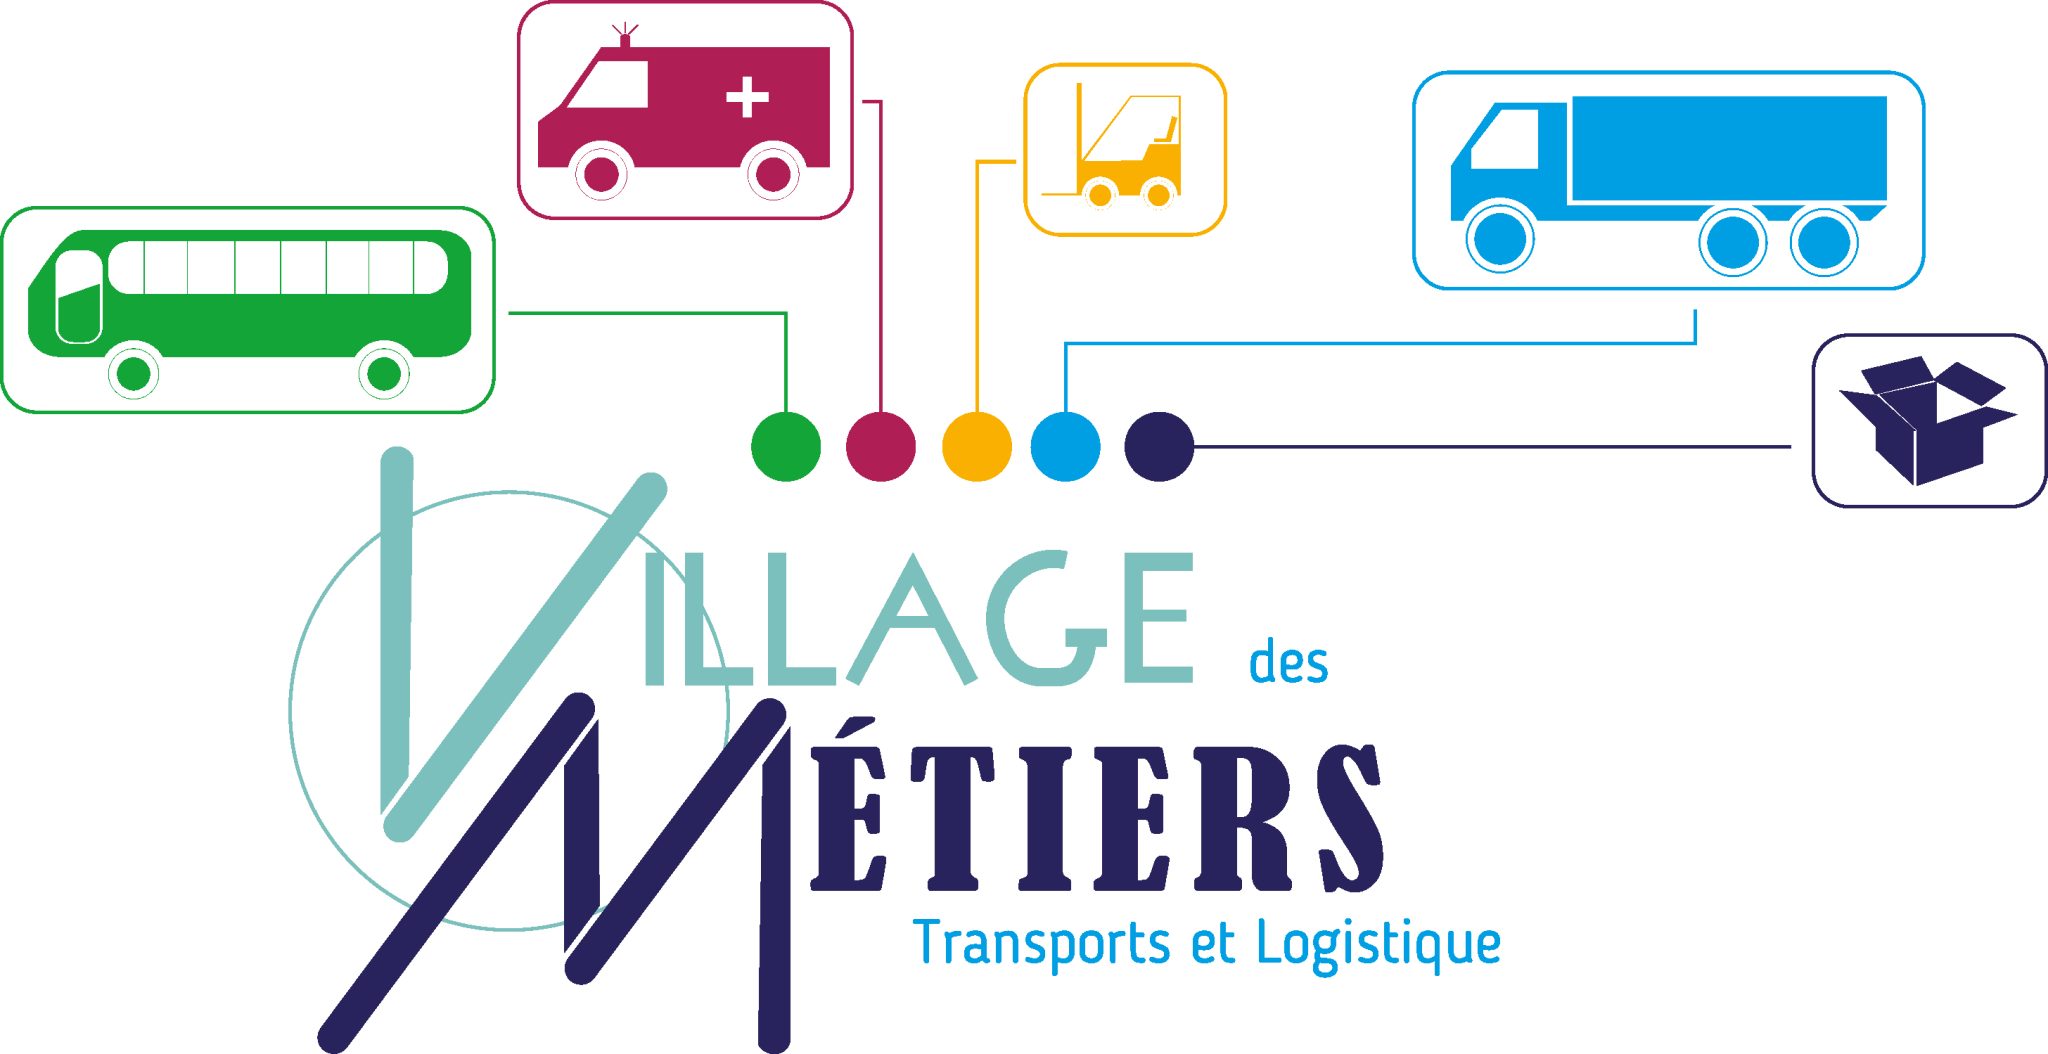 Occitanie : le Village des métiers Transport-Logistique a fait son grand retour